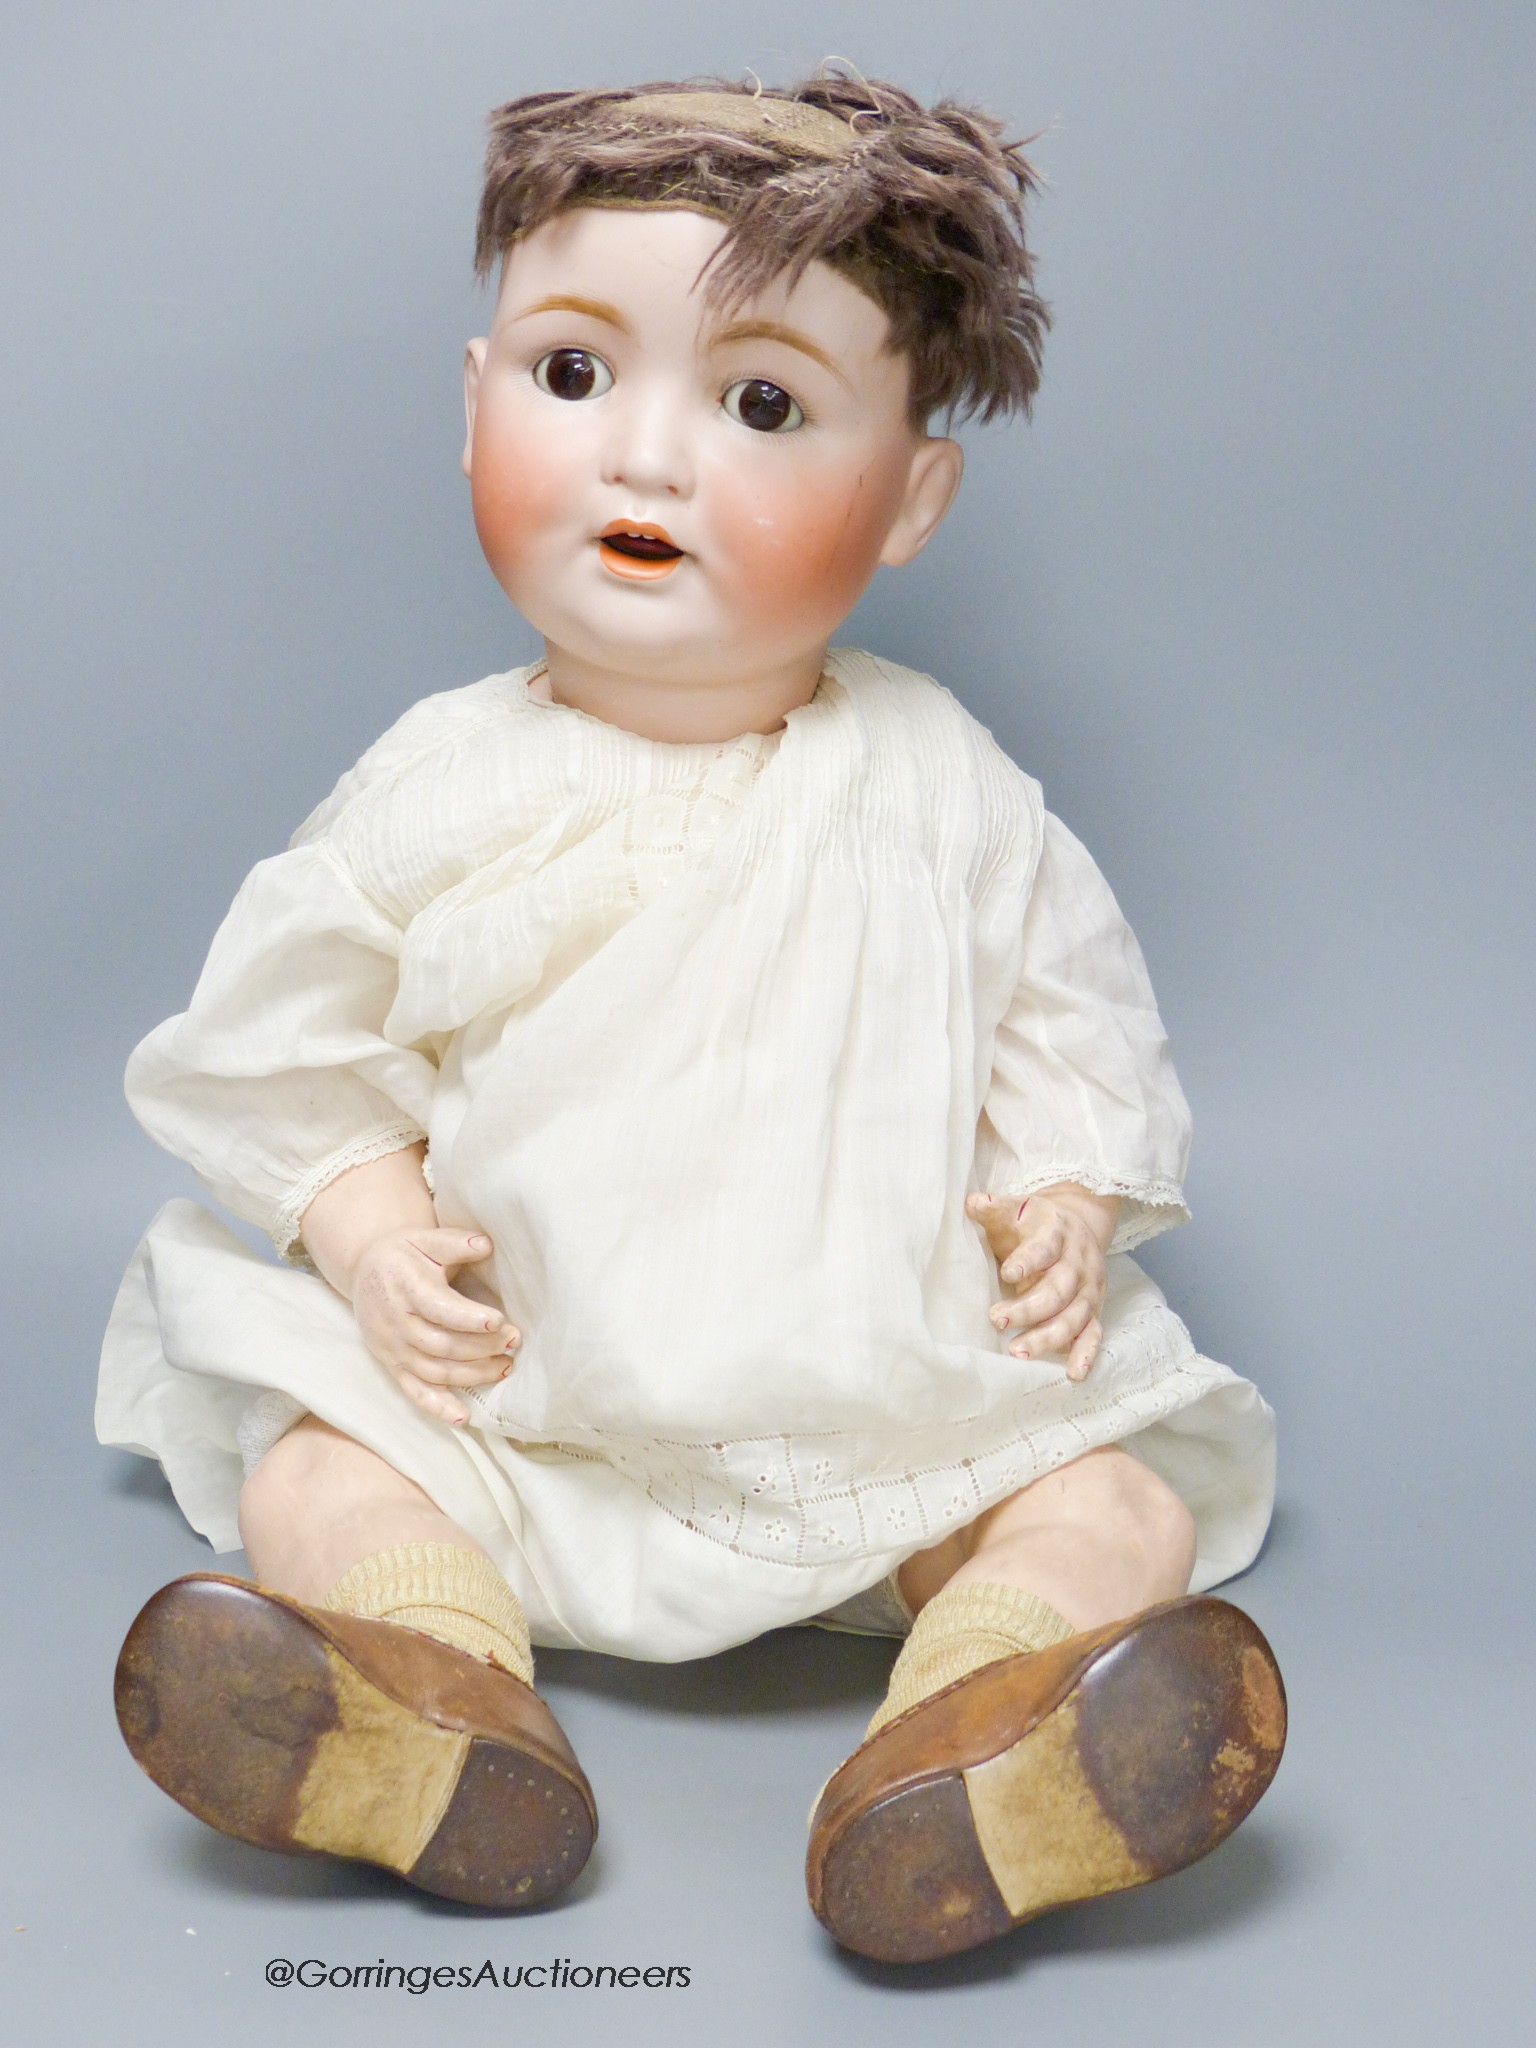 A German bisque headed doll, by Catterfelder Puppenfabrik marked CP58